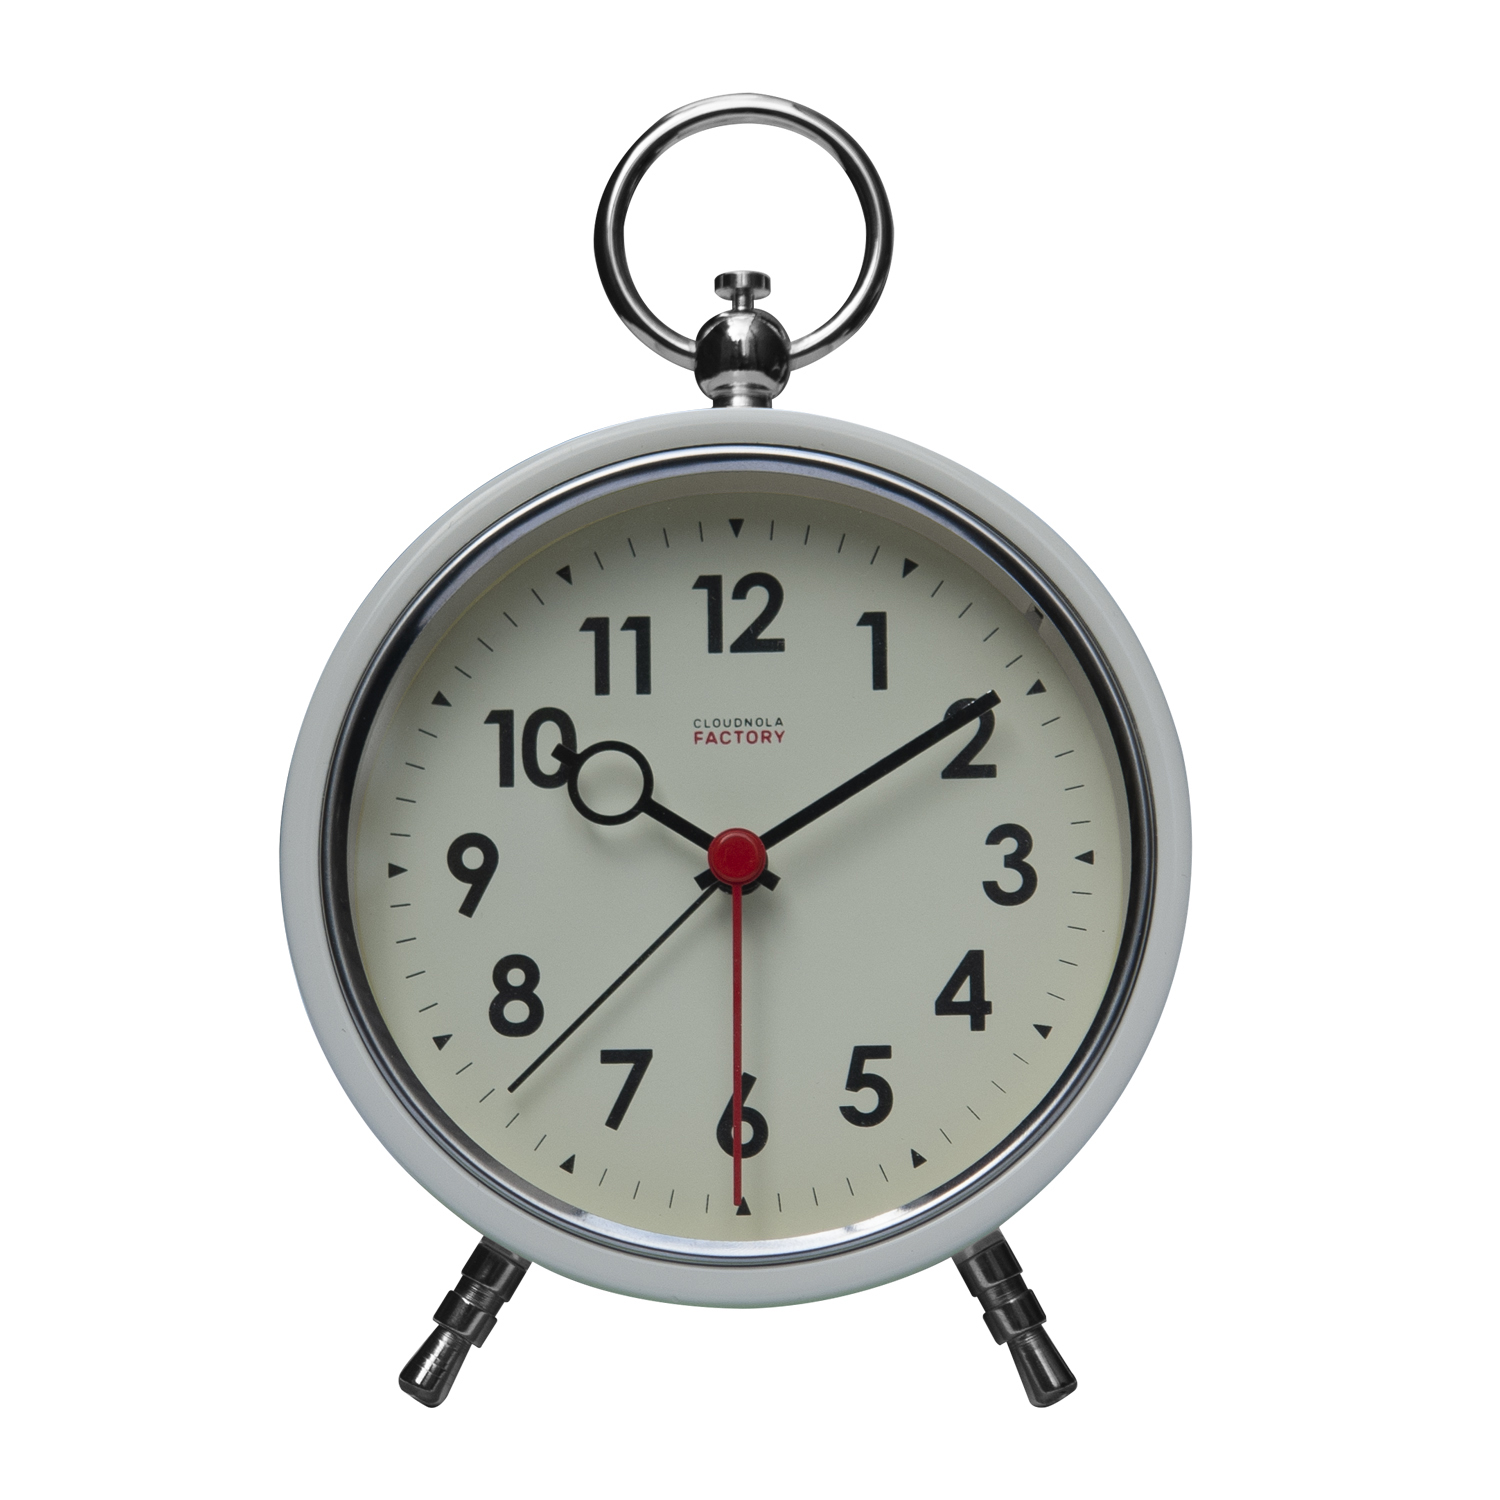 Cloudnola Factory Alarm clock